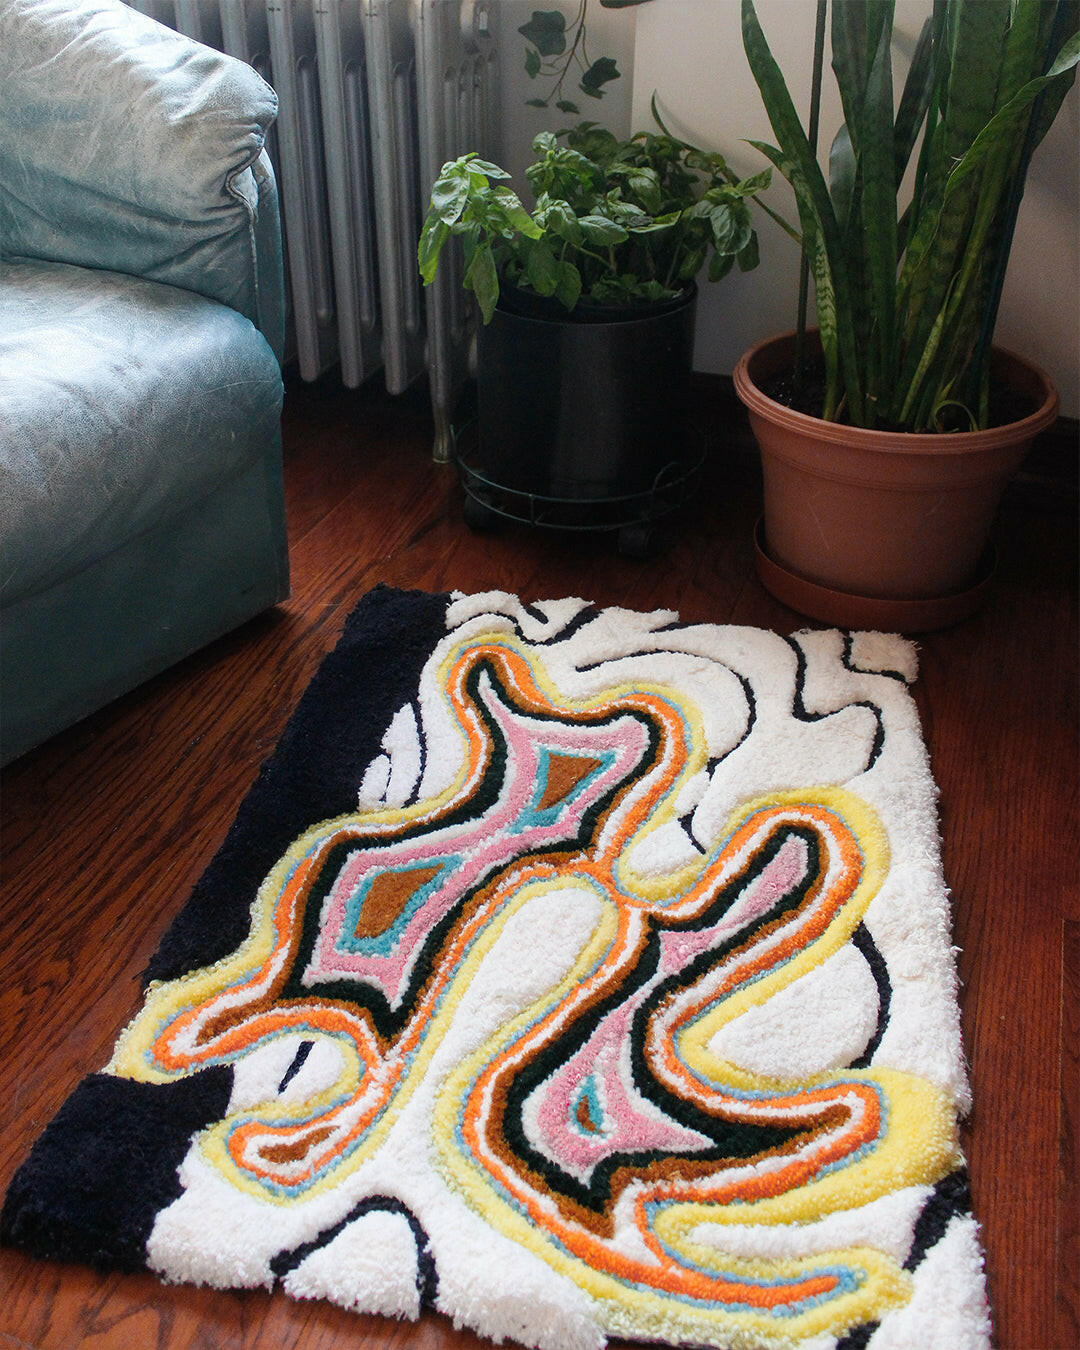 Modern funky abstract area rug by indie homeware brand Jubi NYC. 100% wool handmade to order.